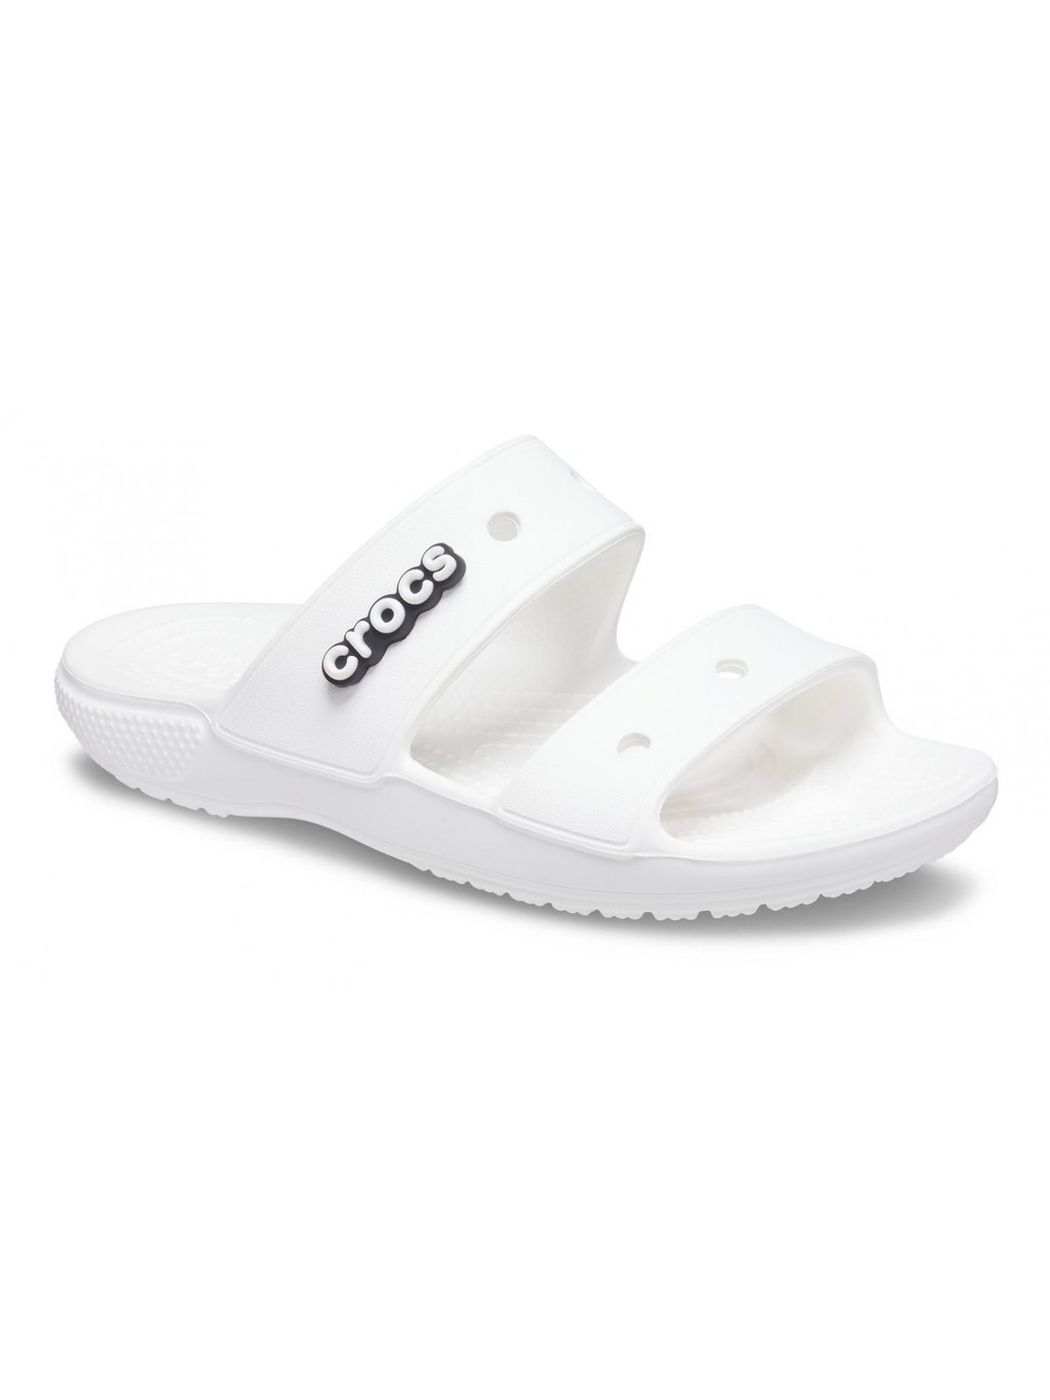 CROCS Chaussons Unisexe Adulte Classique crocs sandale 206761 100 Blanc